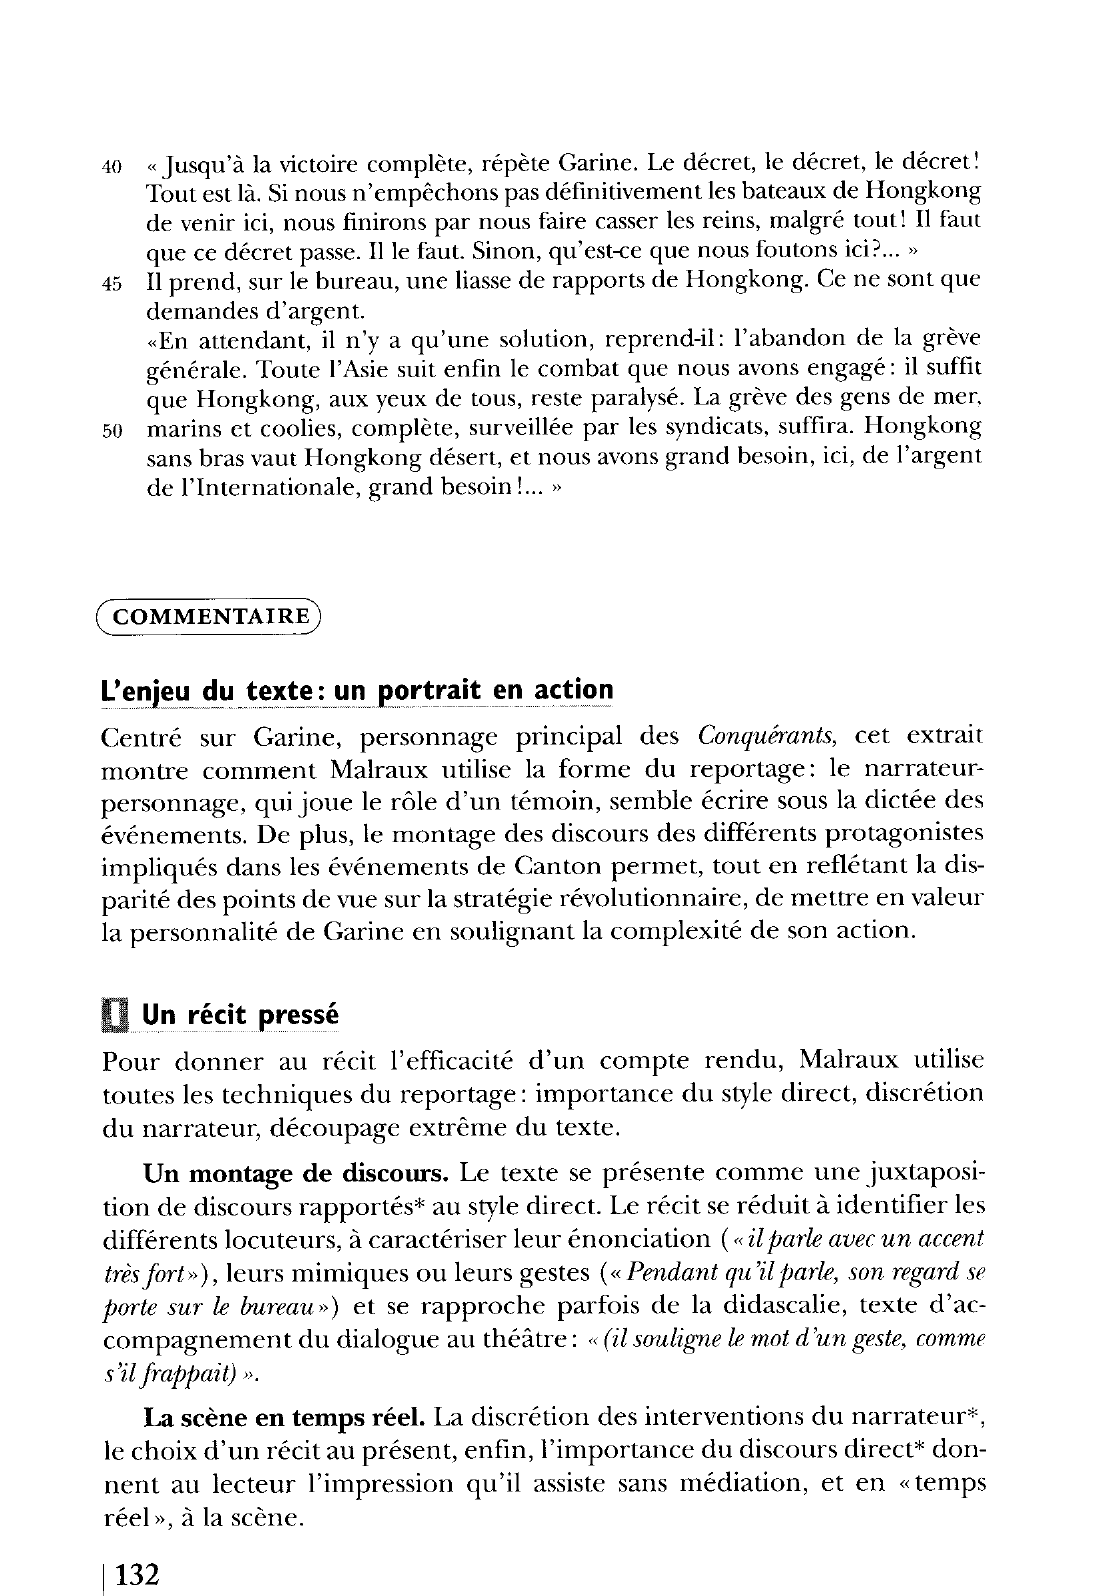 Prévisualisation du document Les Conquérants, IIe partie, Le Livre de Poche (Grasset), pp. 212-215. Commentaire composé